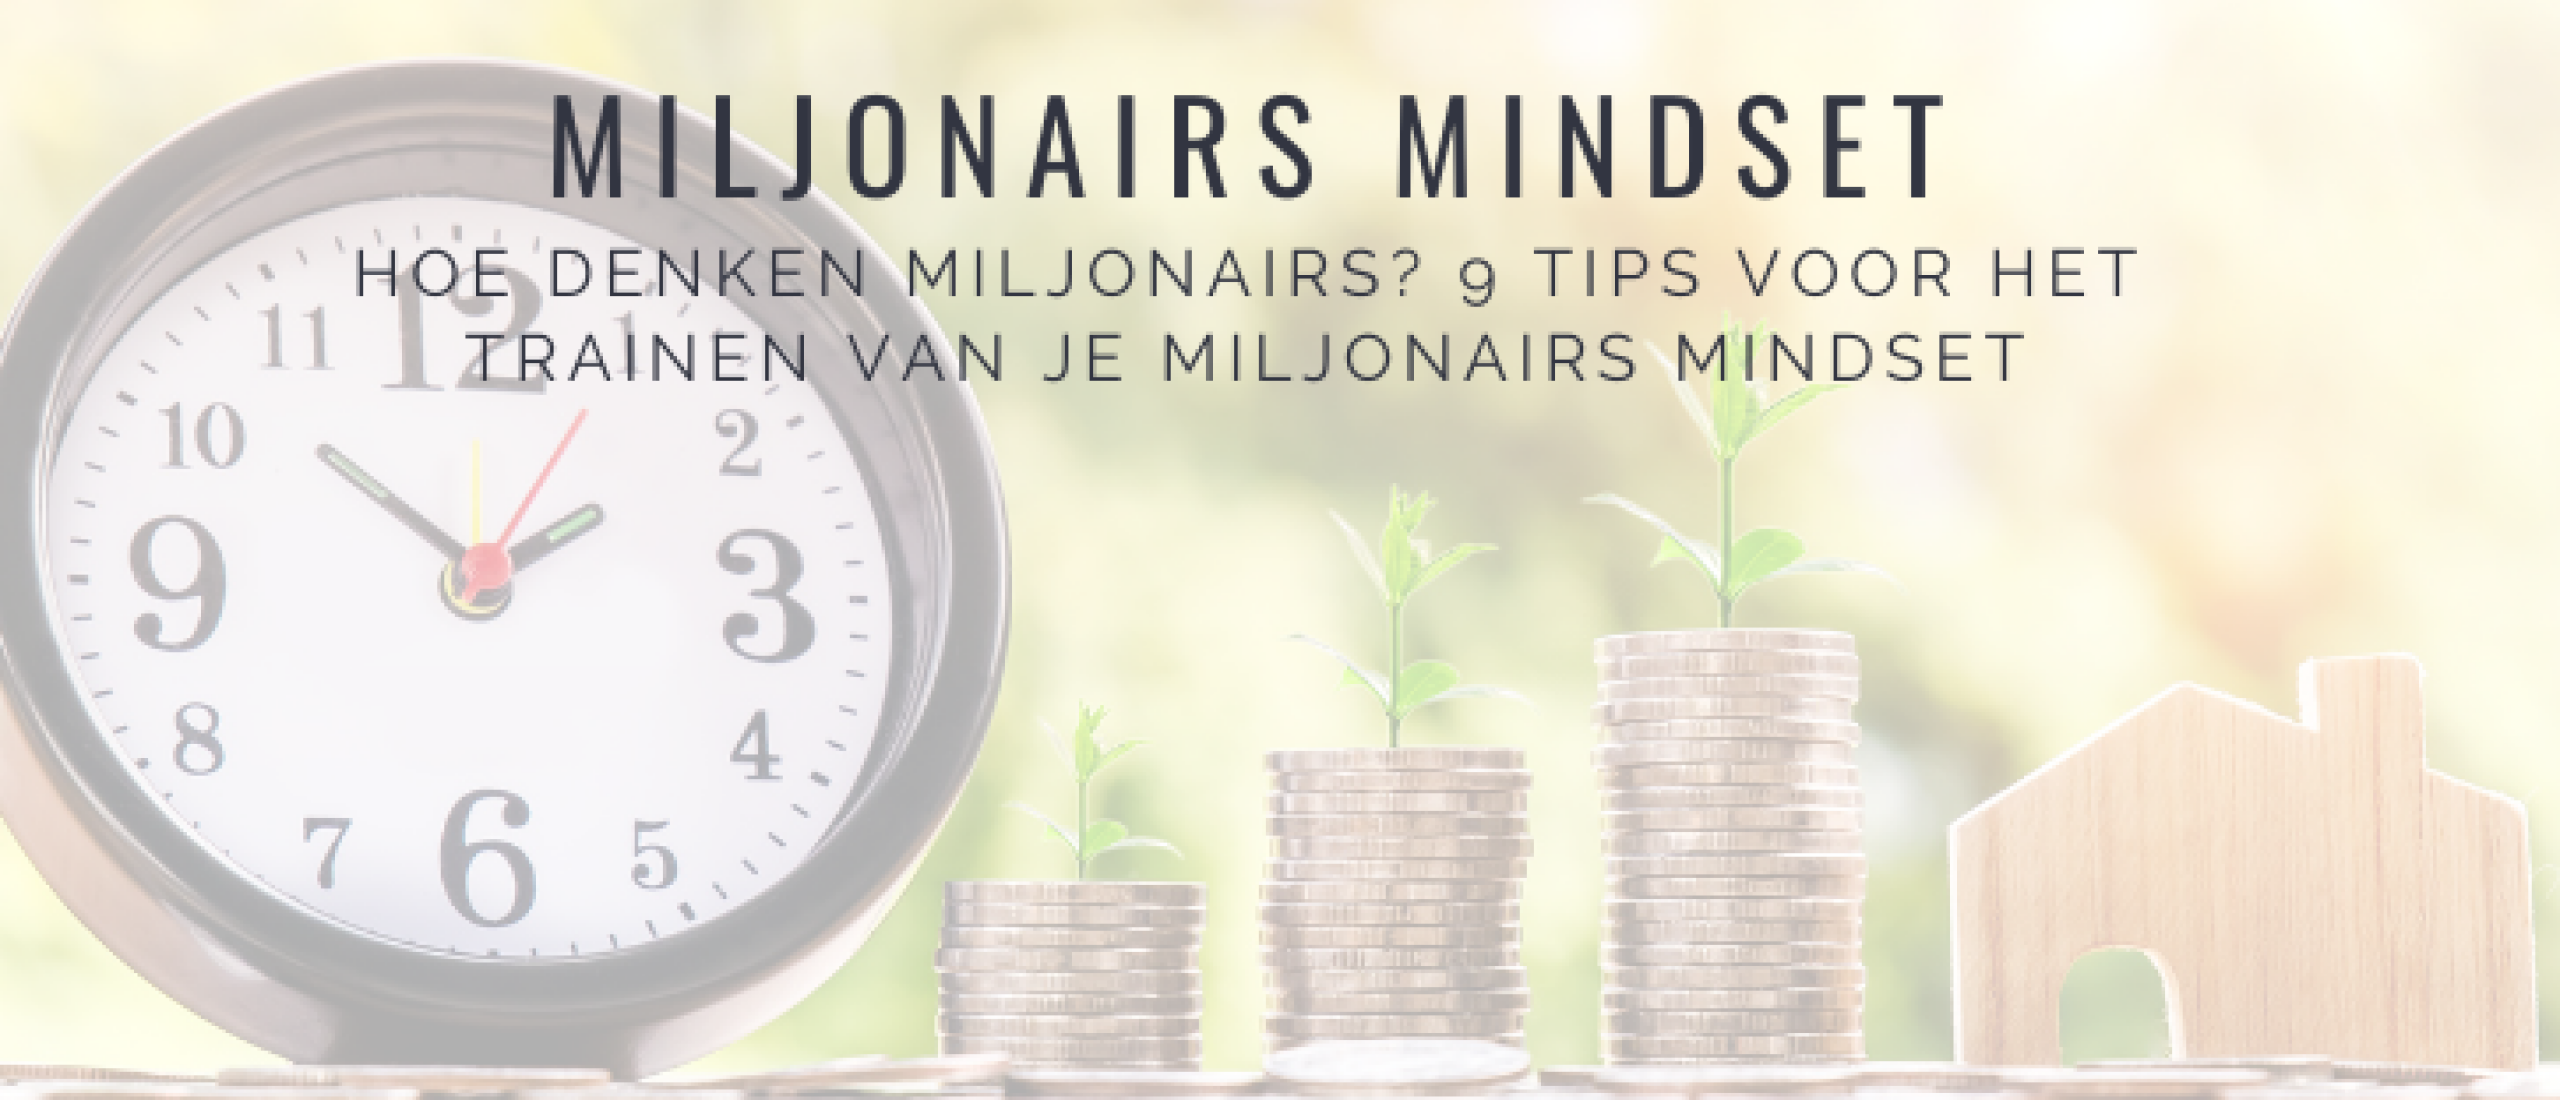 Hoe Train Je Een Miljonairs Mindset? 9 Tips als Miljonair Denken